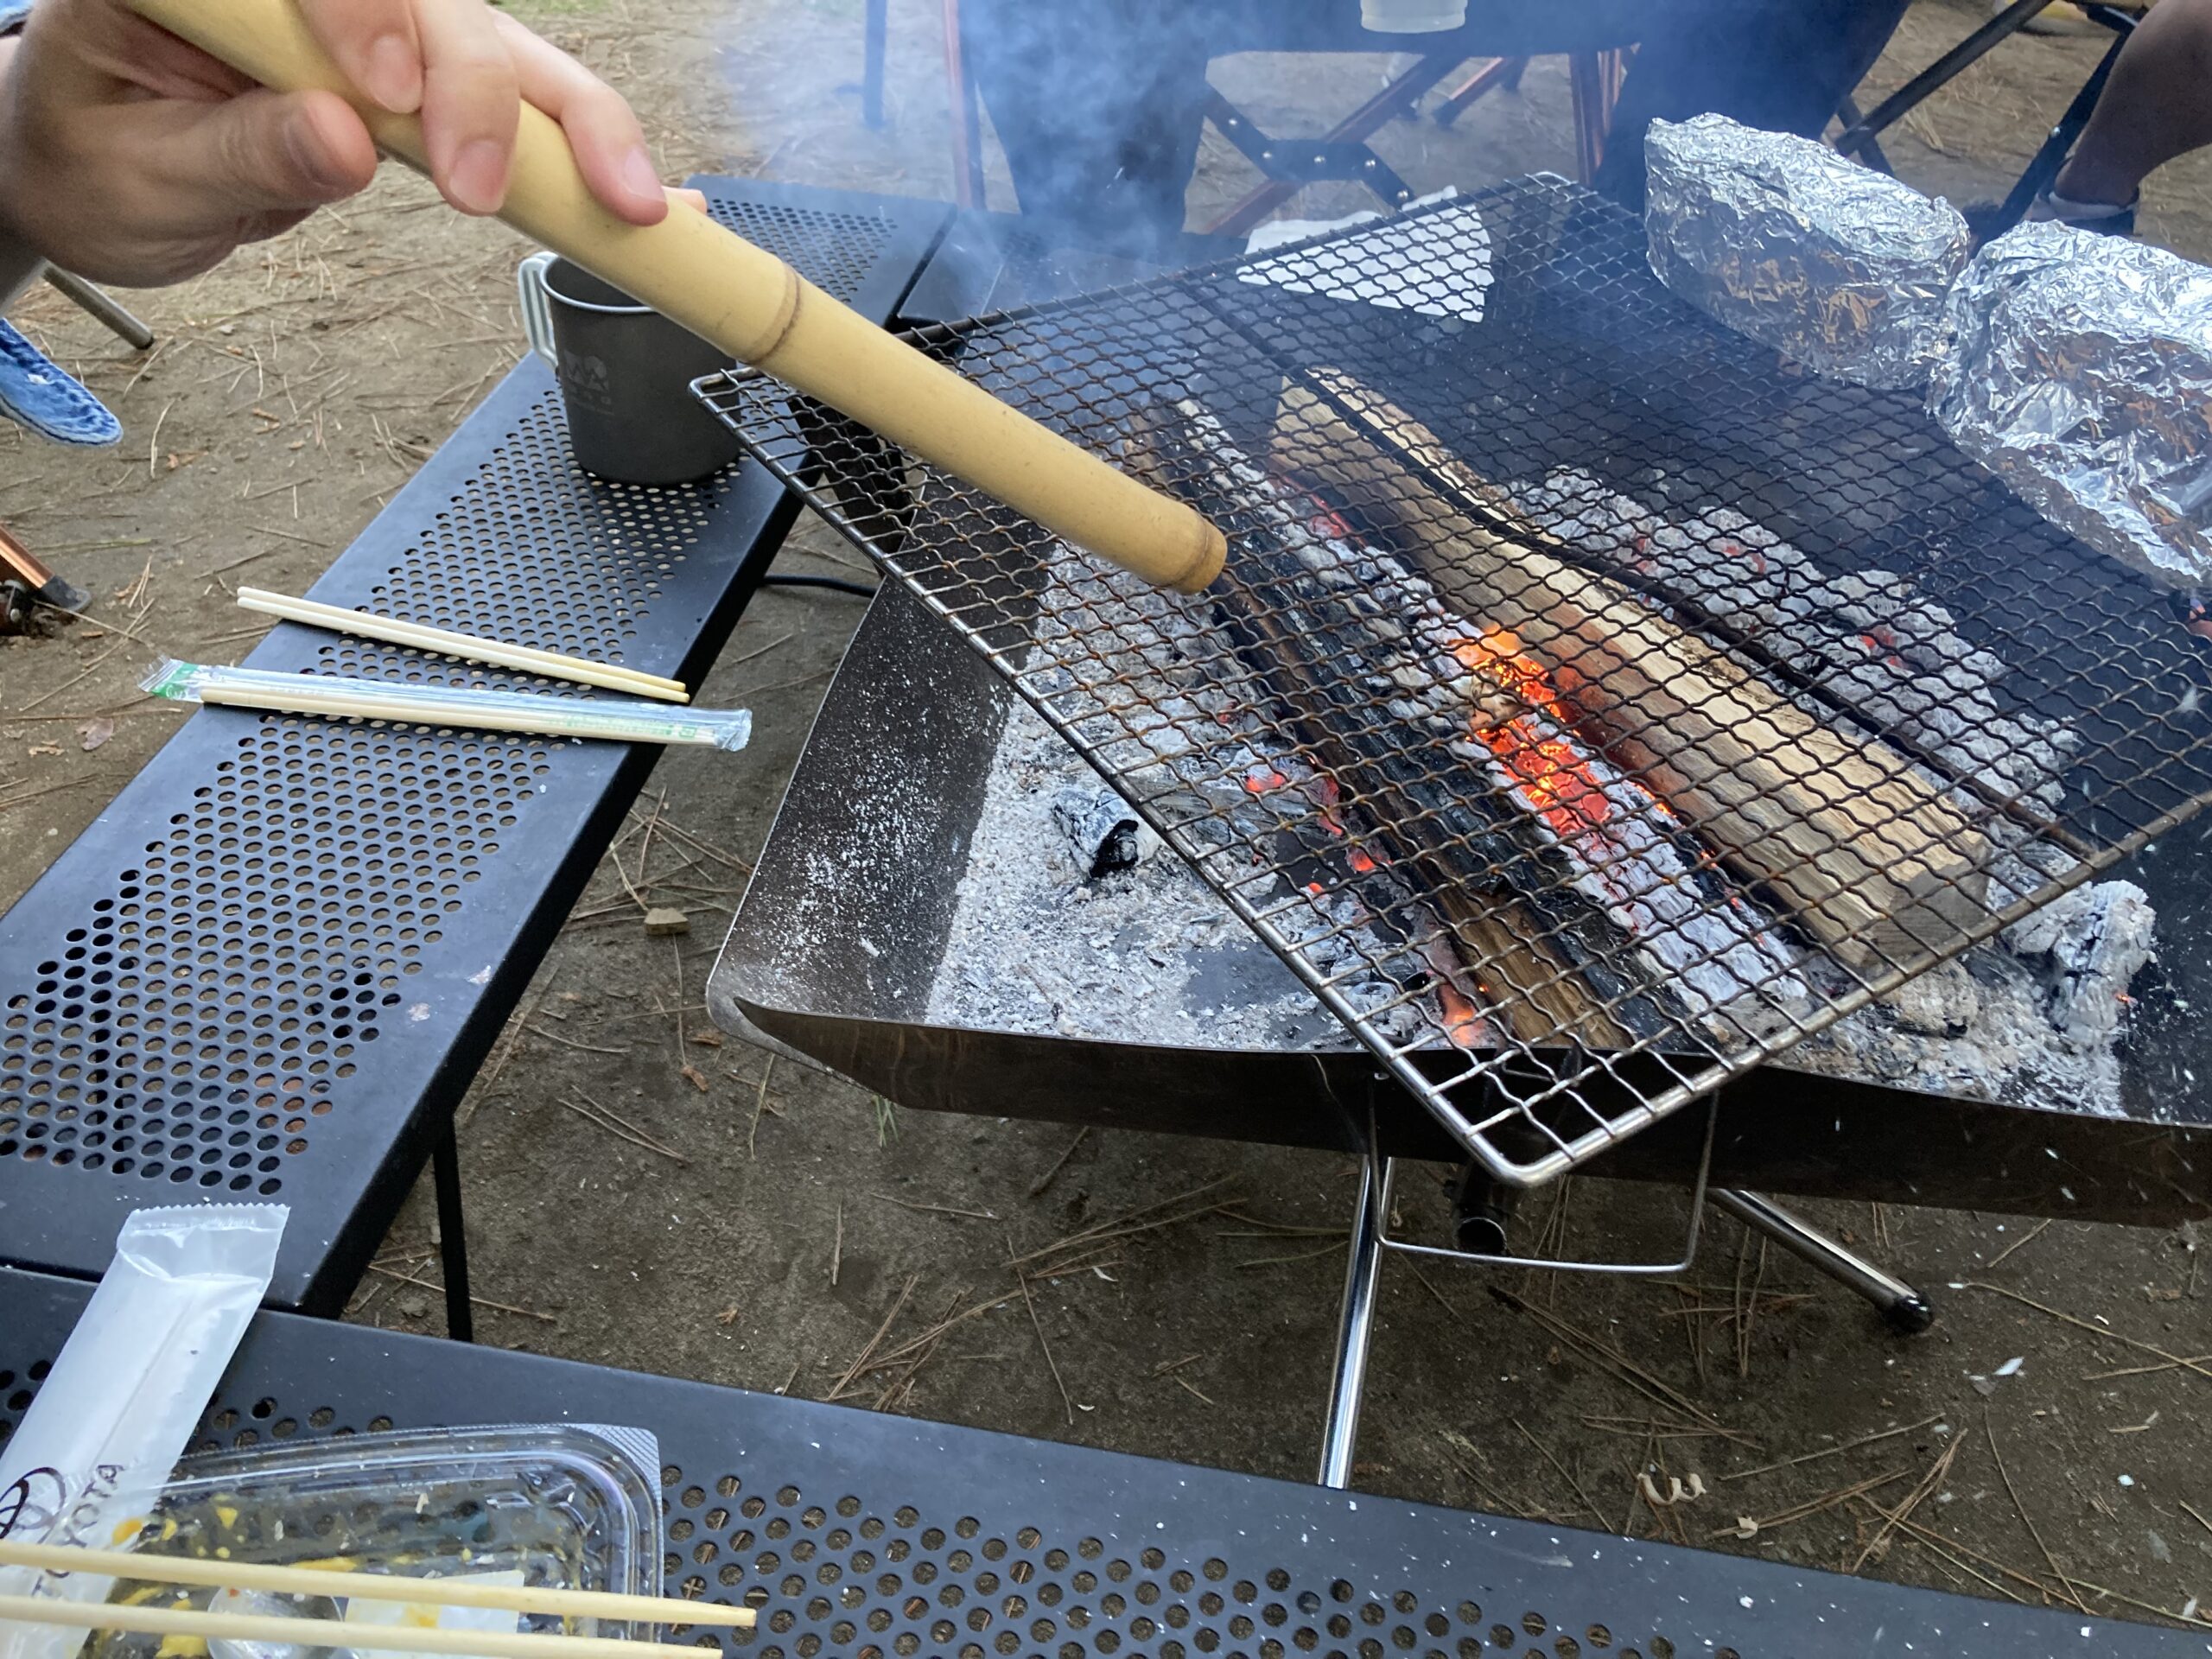 キャンプ飯ロートビーフ焚き火